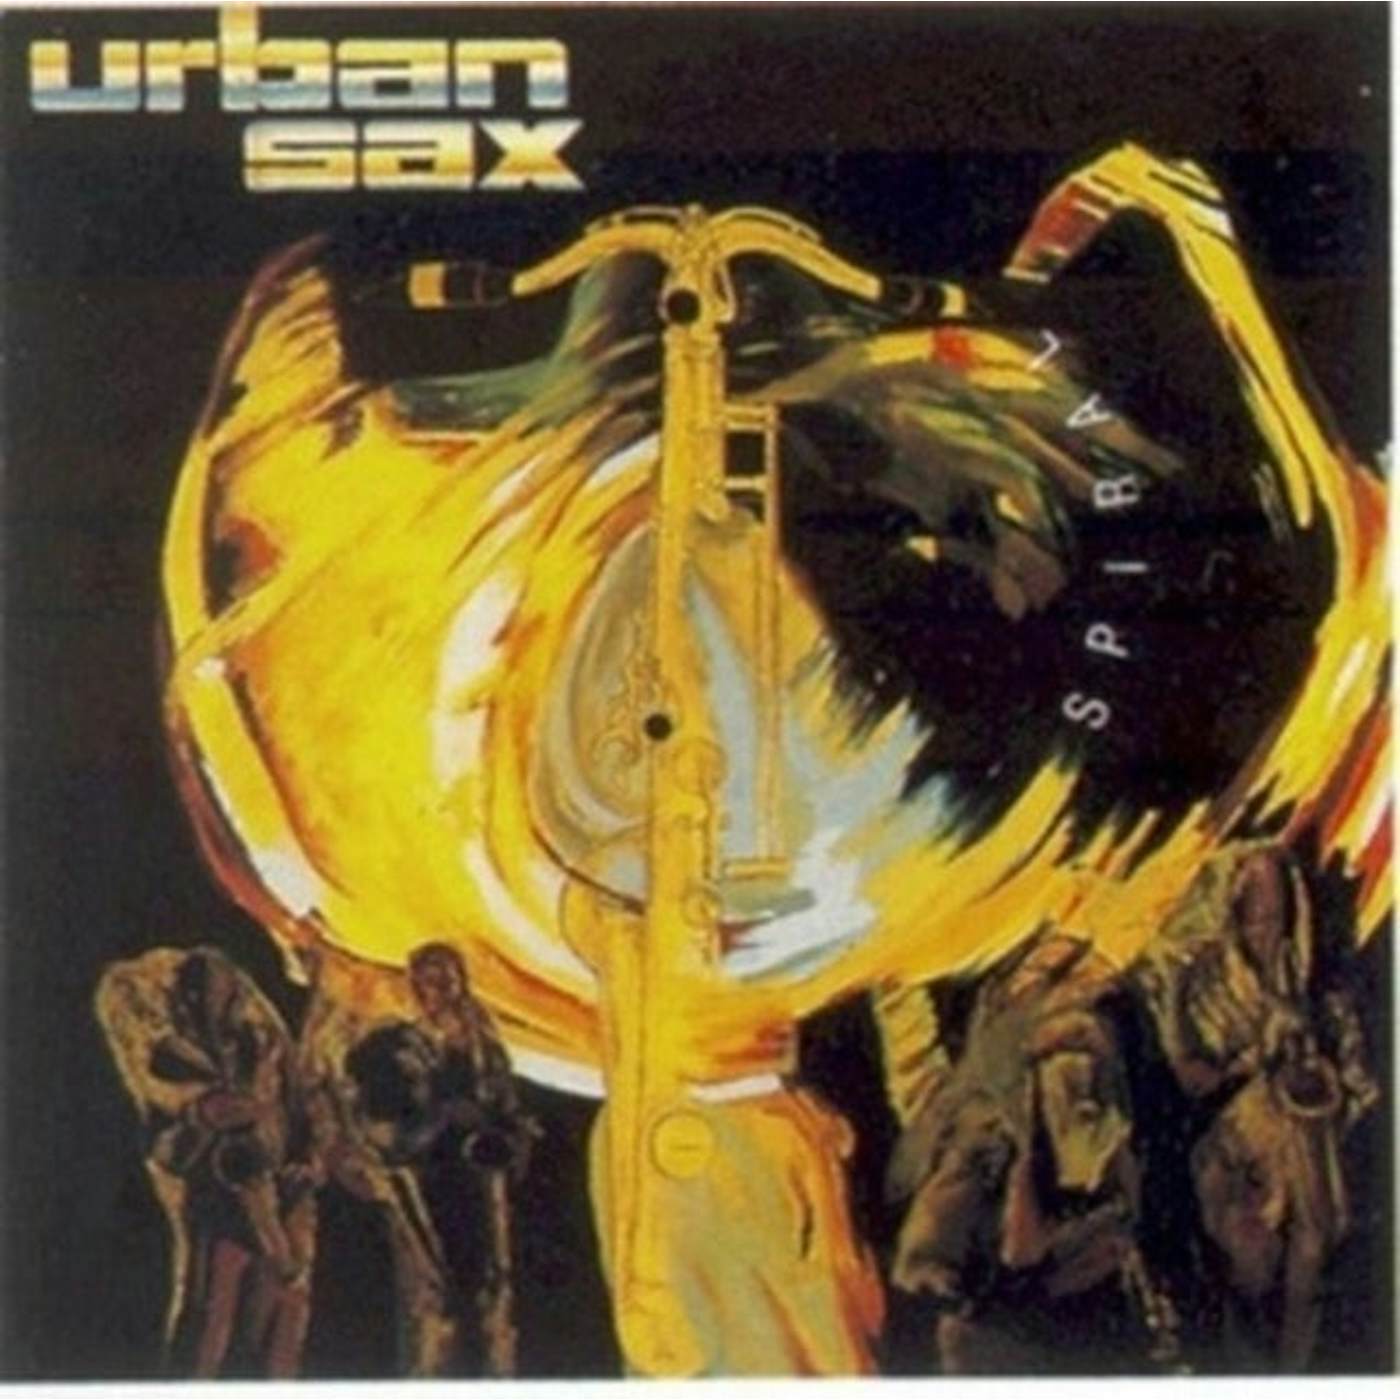 Urban Sax LP - Spiral (Vinyl)